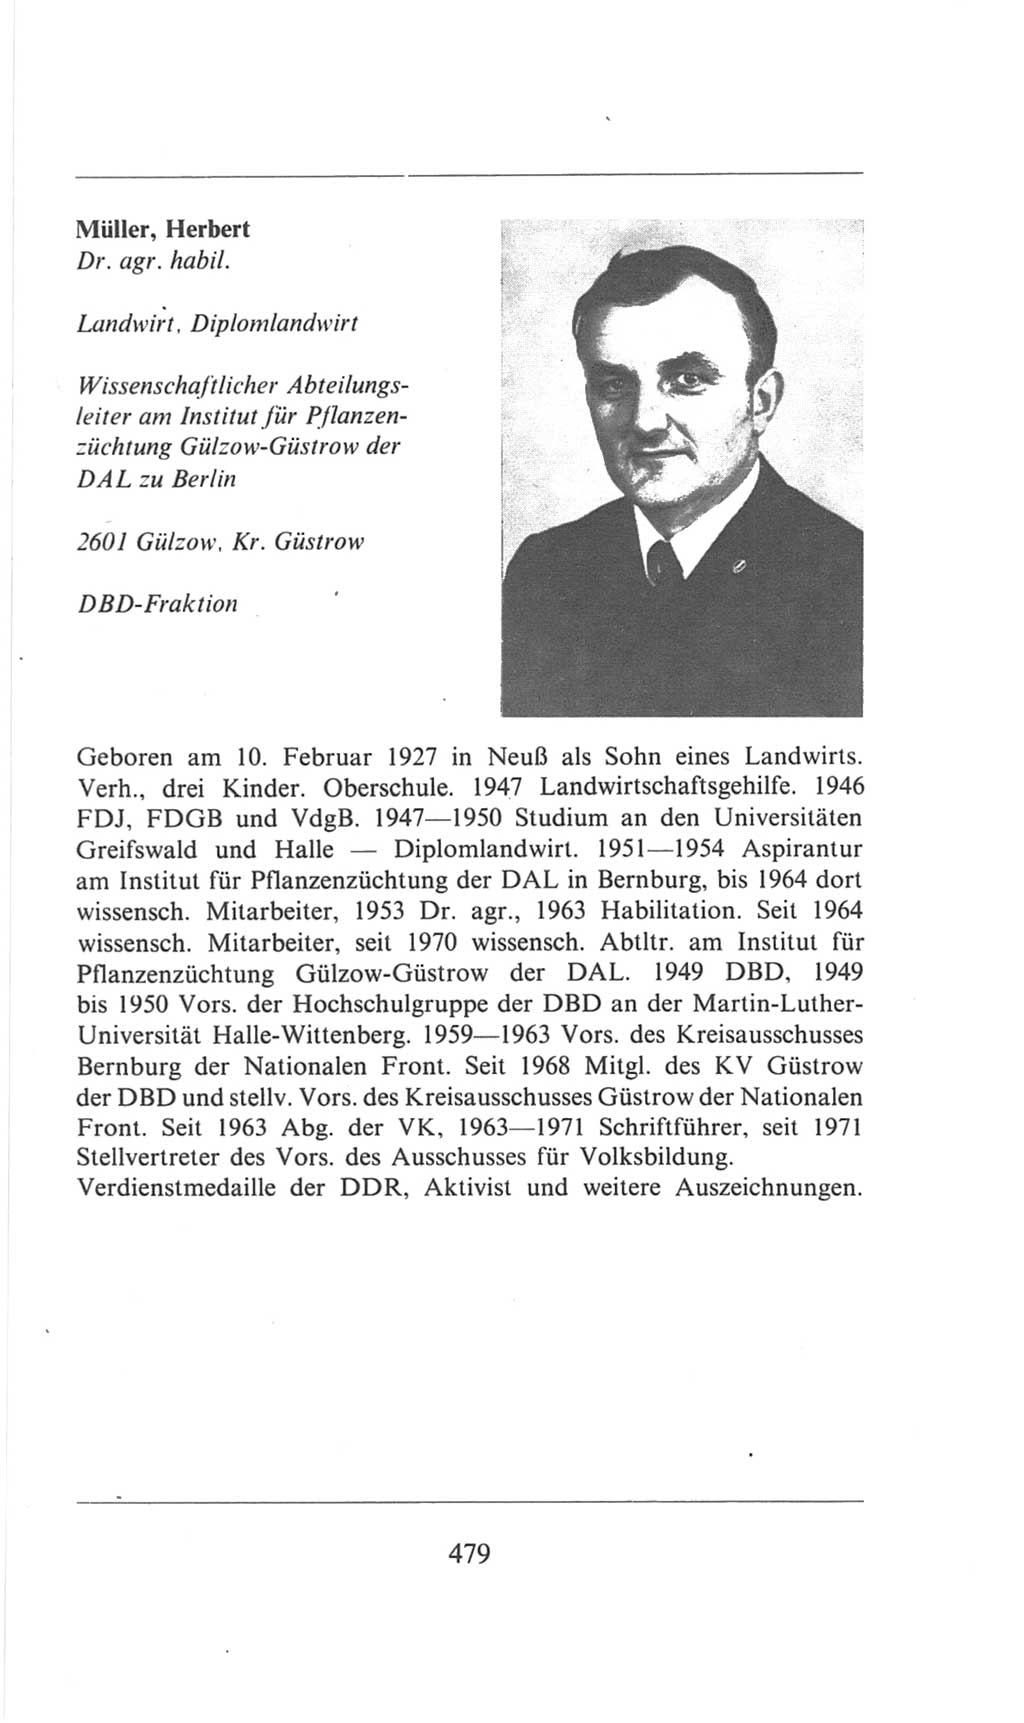 Volkskammer (VK) der Deutschen Demokratischen Republik (DDR), 6. Wahlperiode 1971-1976, Seite 479 (VK. DDR 6. WP. 1971-1976, S. 479)